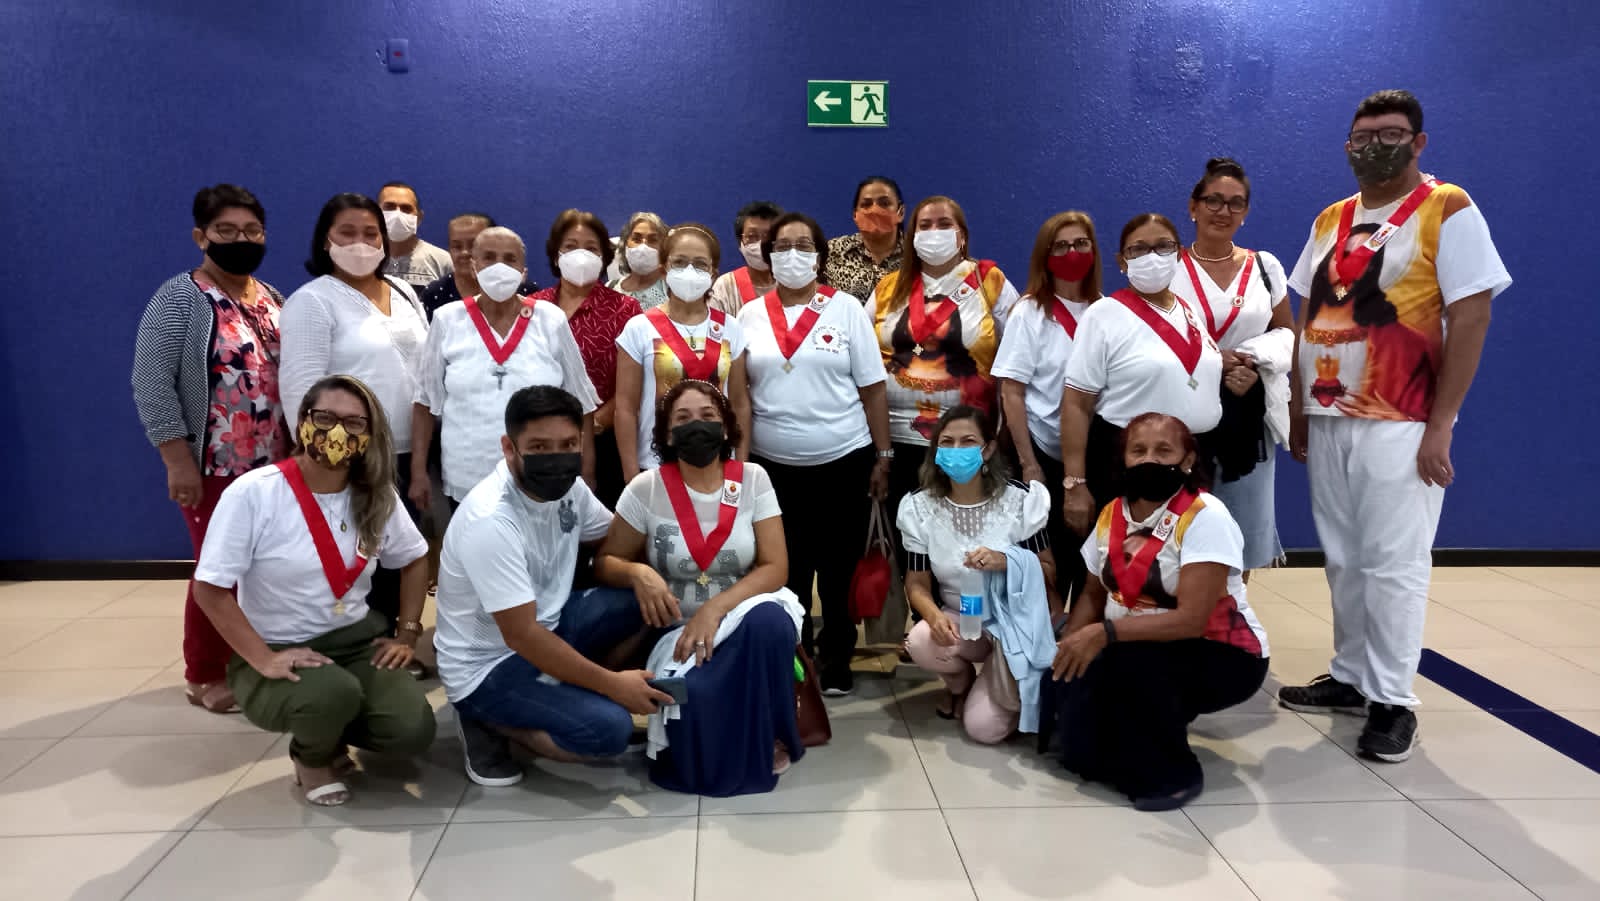 Grupos do Apostolado da Oração da Arquidiocese de Manaus prestigiam filme Coração Ardente exibido no cinema